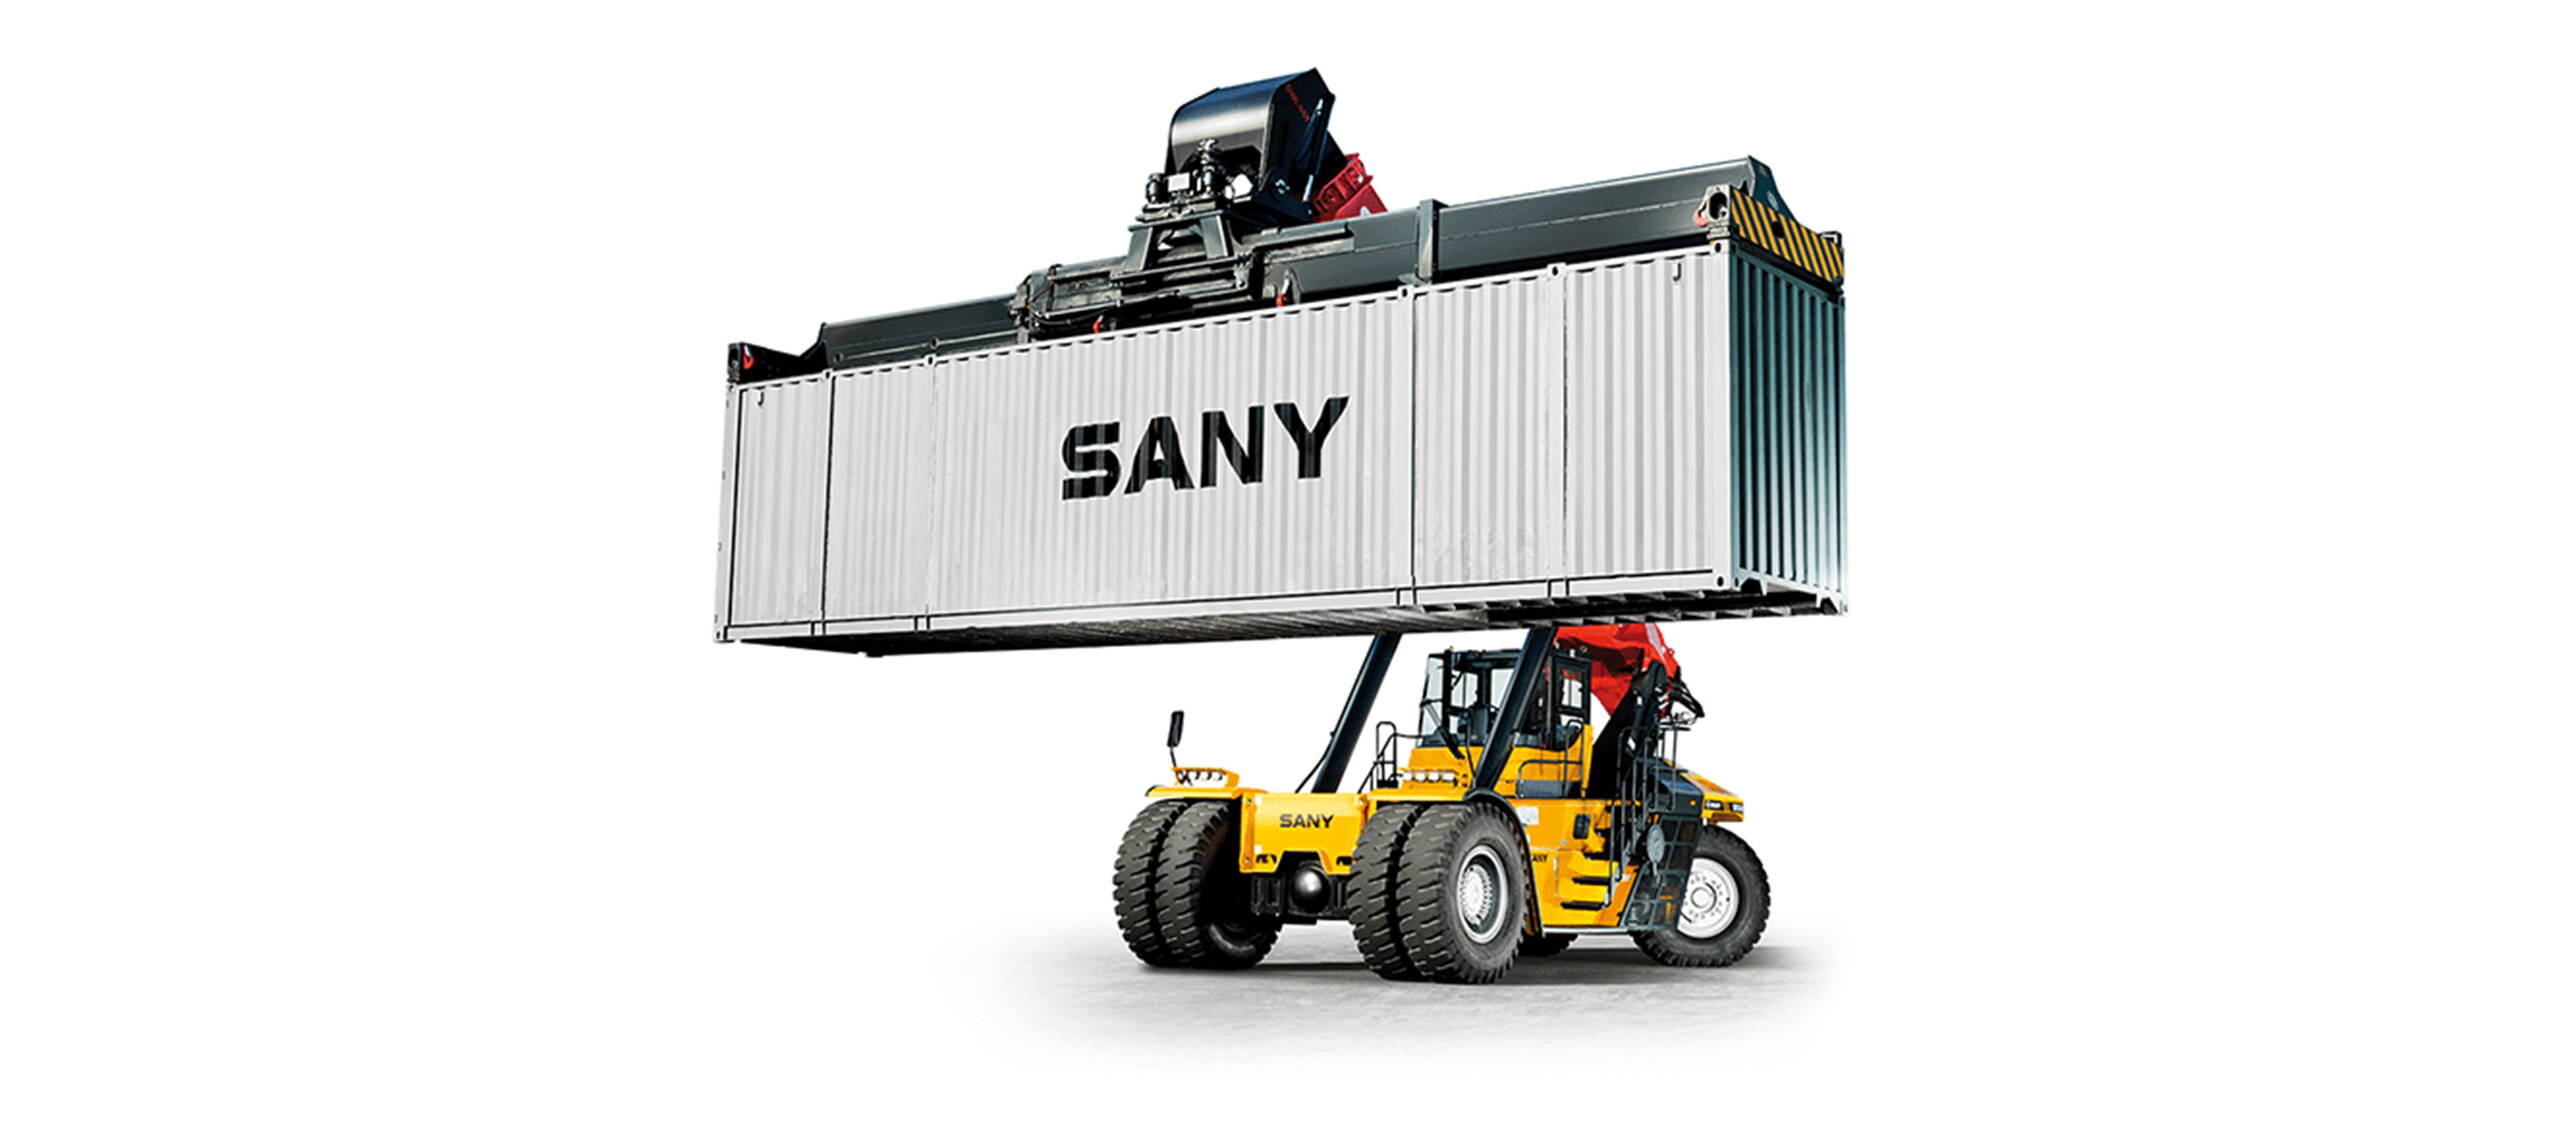 Reachstacker Sany SRSC4531G-P–45T/27T/12T. Fahrzeugdaten. REACHSTACKER MIT INTERMODAL-SPREADER. Schwerlaststapler, Containerstapler bis 45t